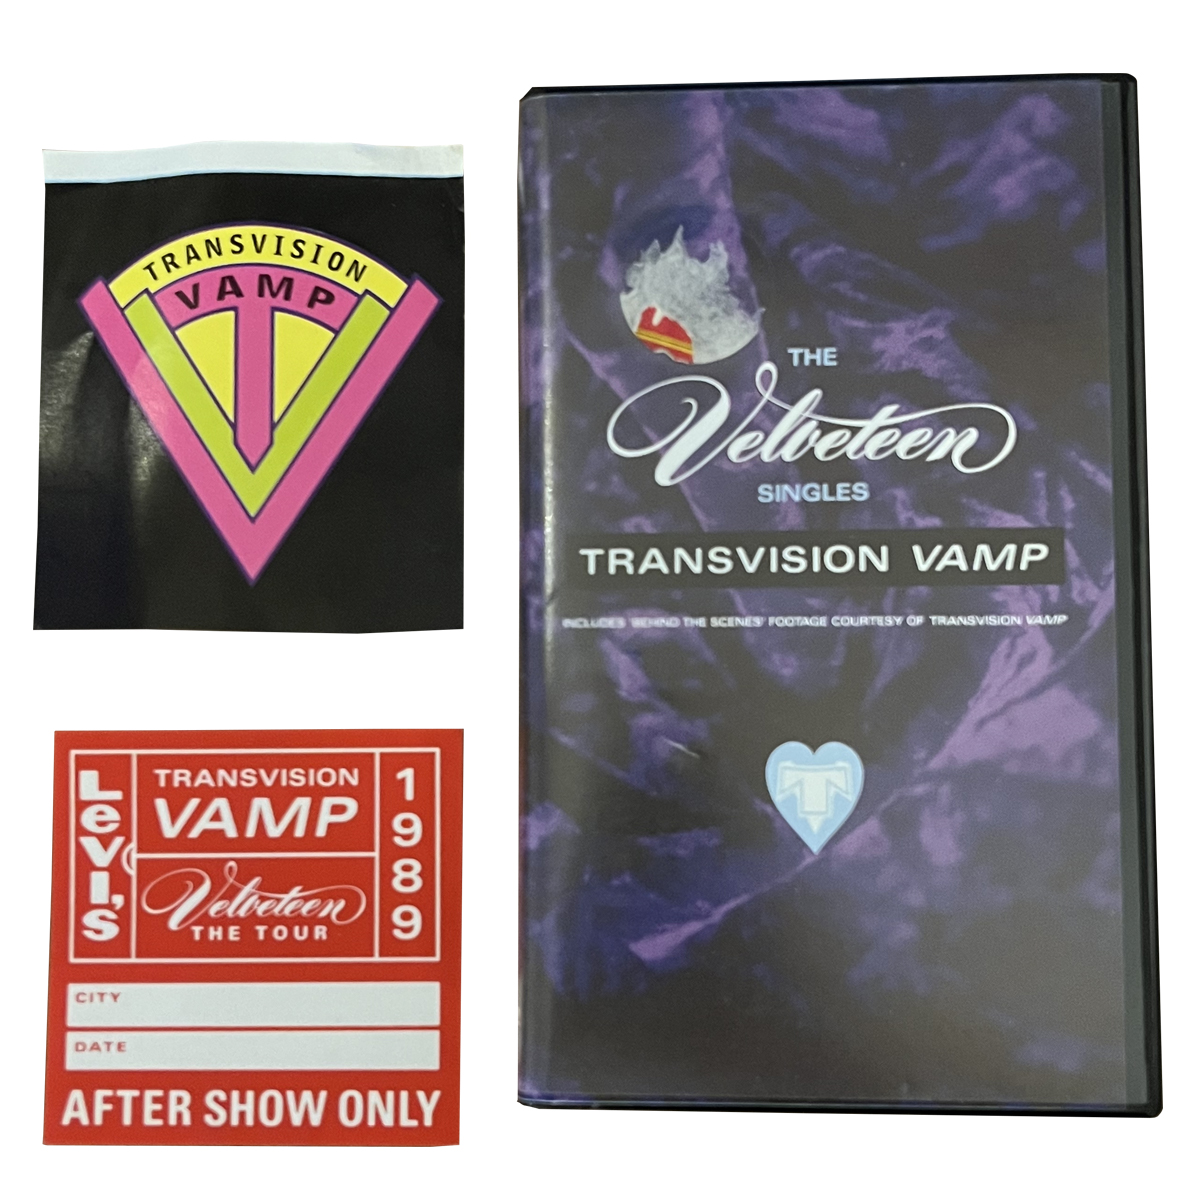 TRANSVISION VAMP ‘VELVETEEN SINGLES’ VHS + PASS + STICKER